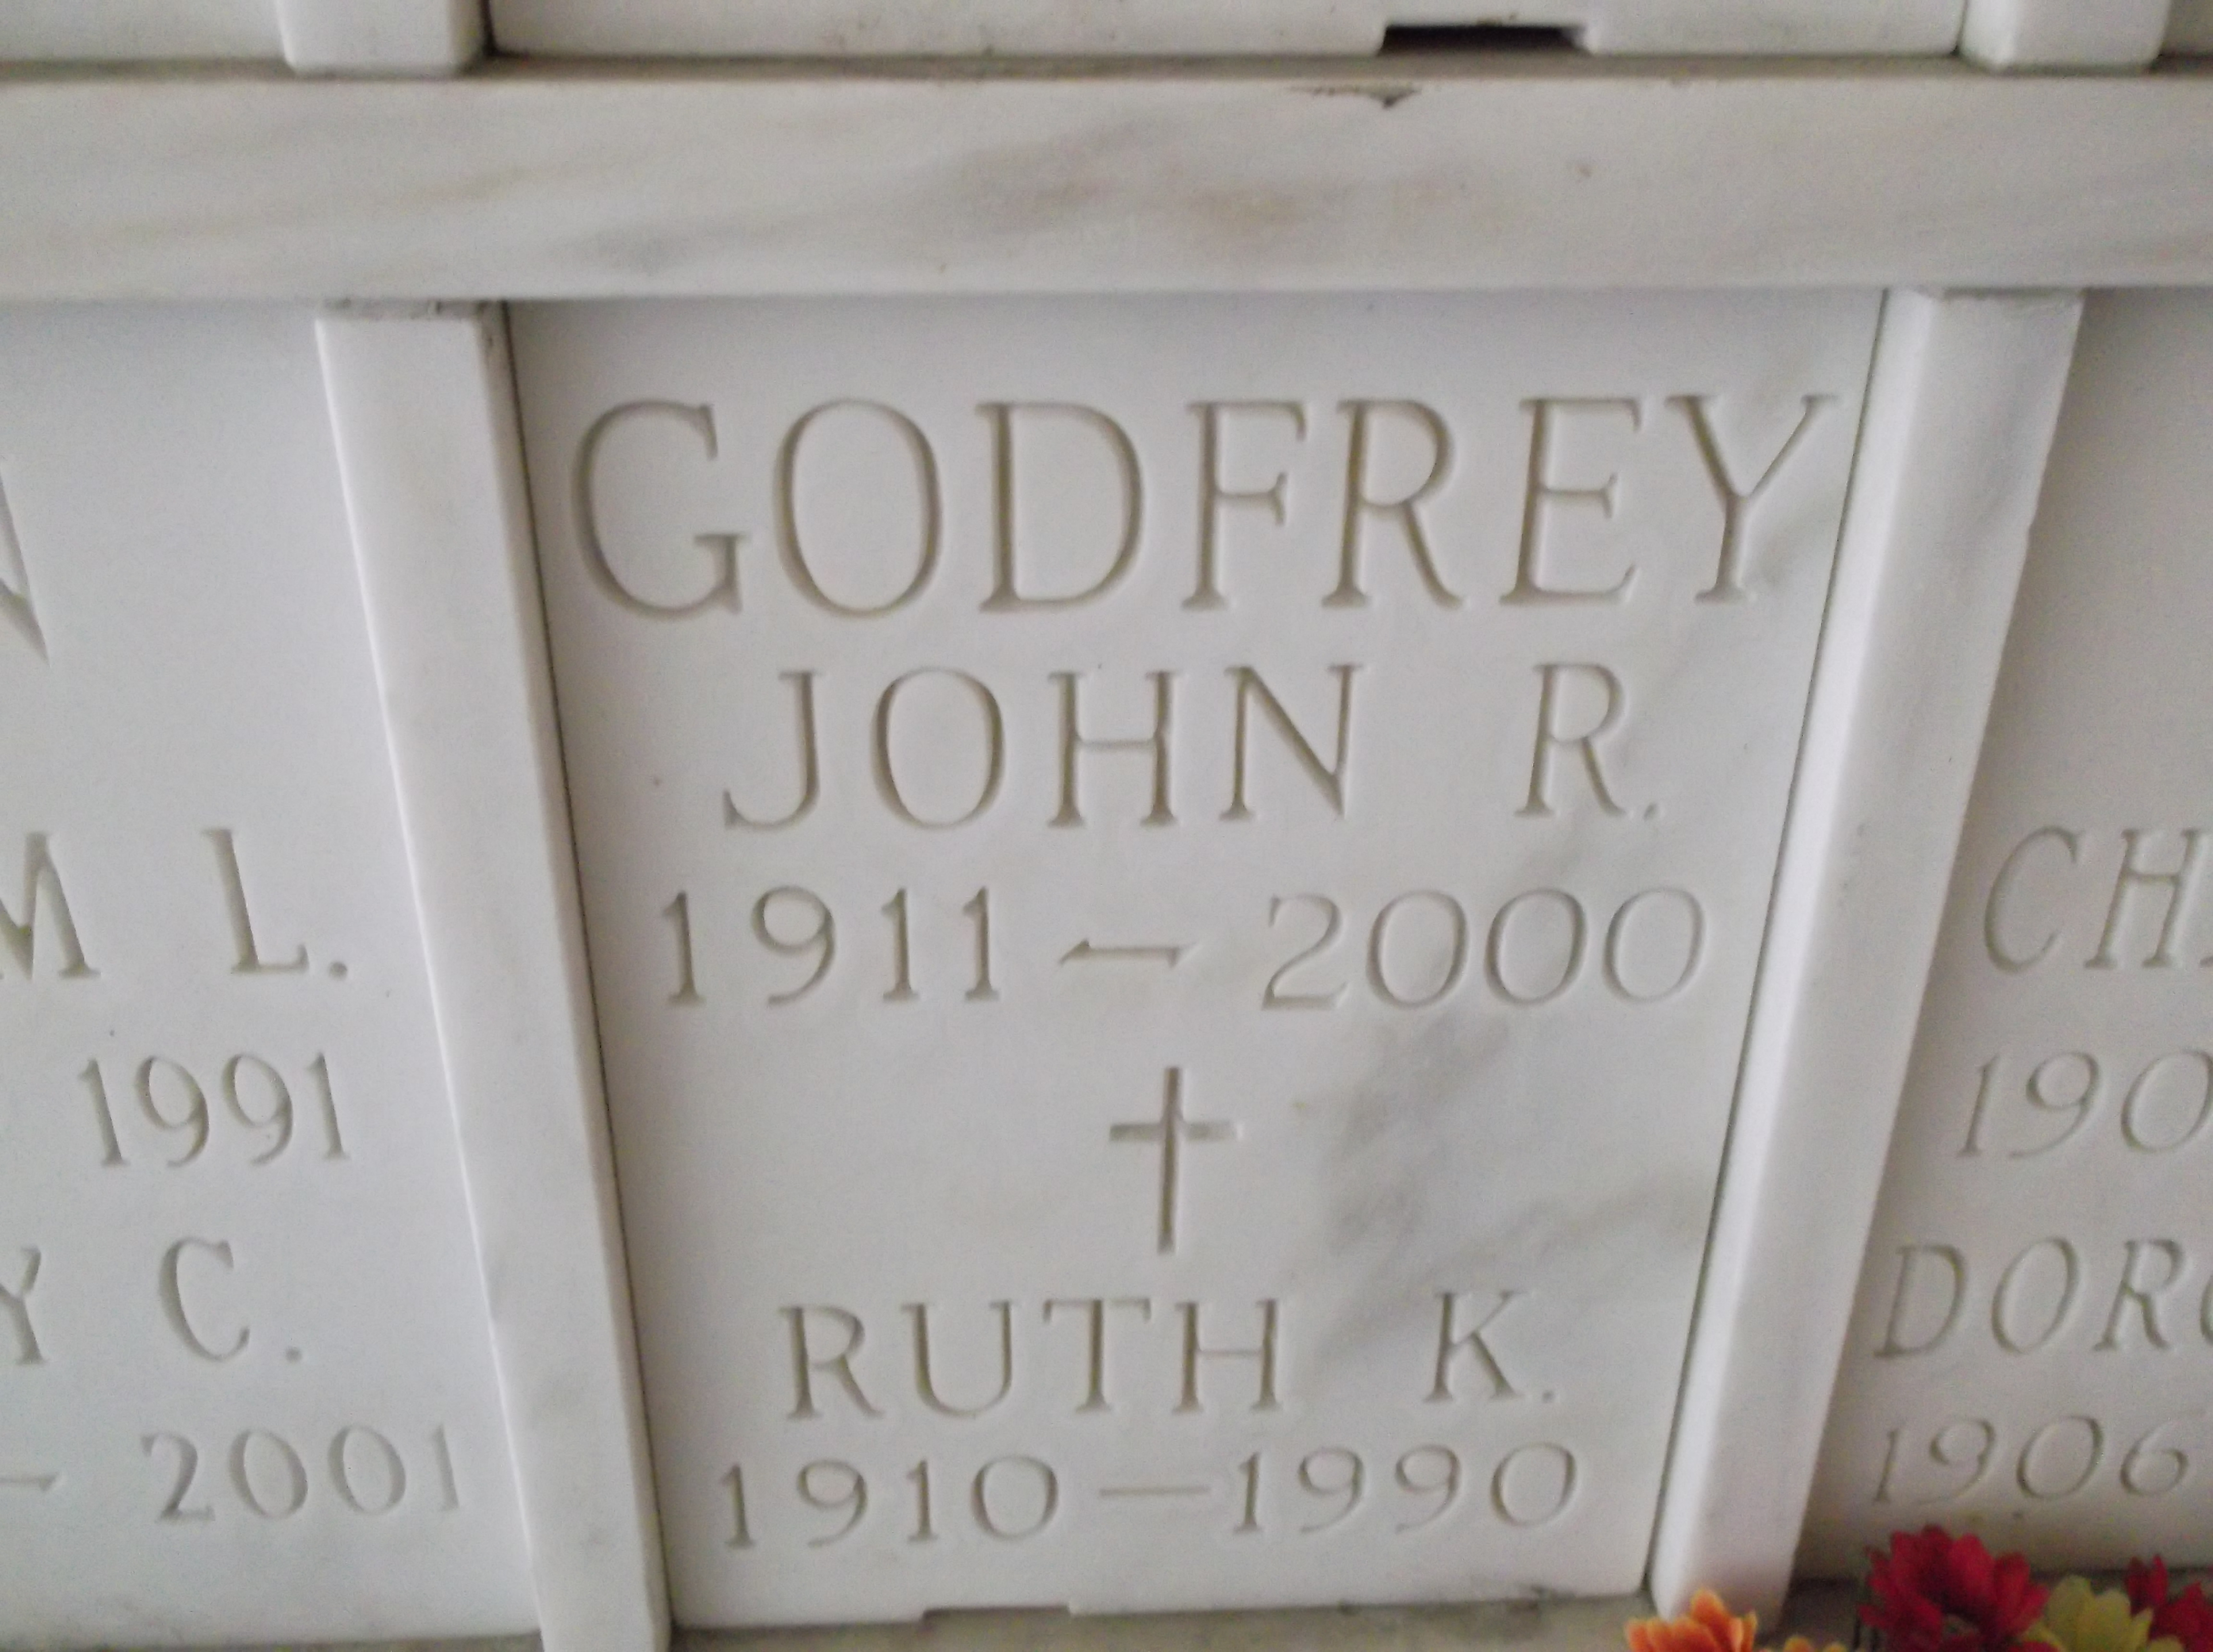 Ruth K Godfrey